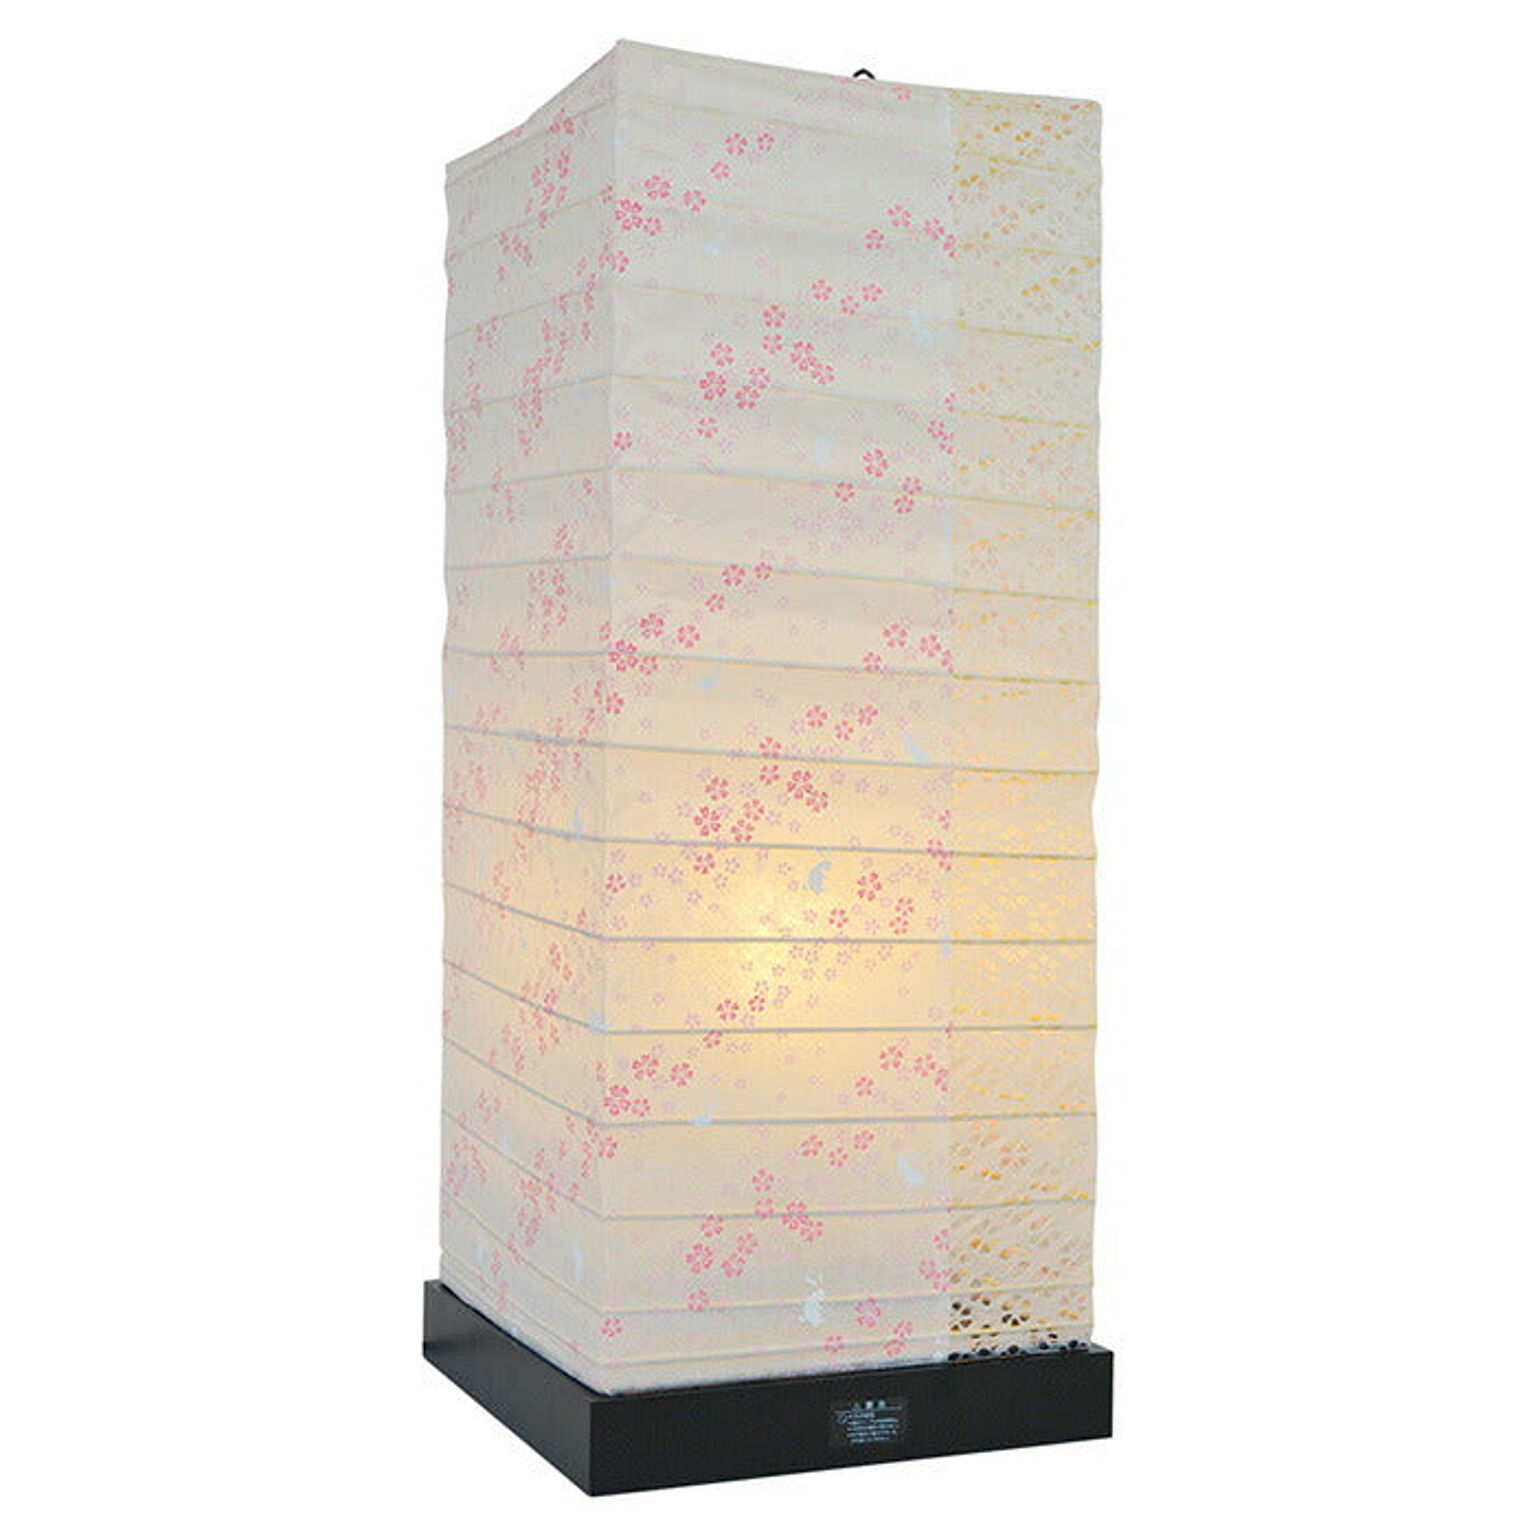 フロアライト 和紙 garden 花うさぎピンク×小梅白 電球付属 幅190x奥行190x高さ480mm 彩光デザイン